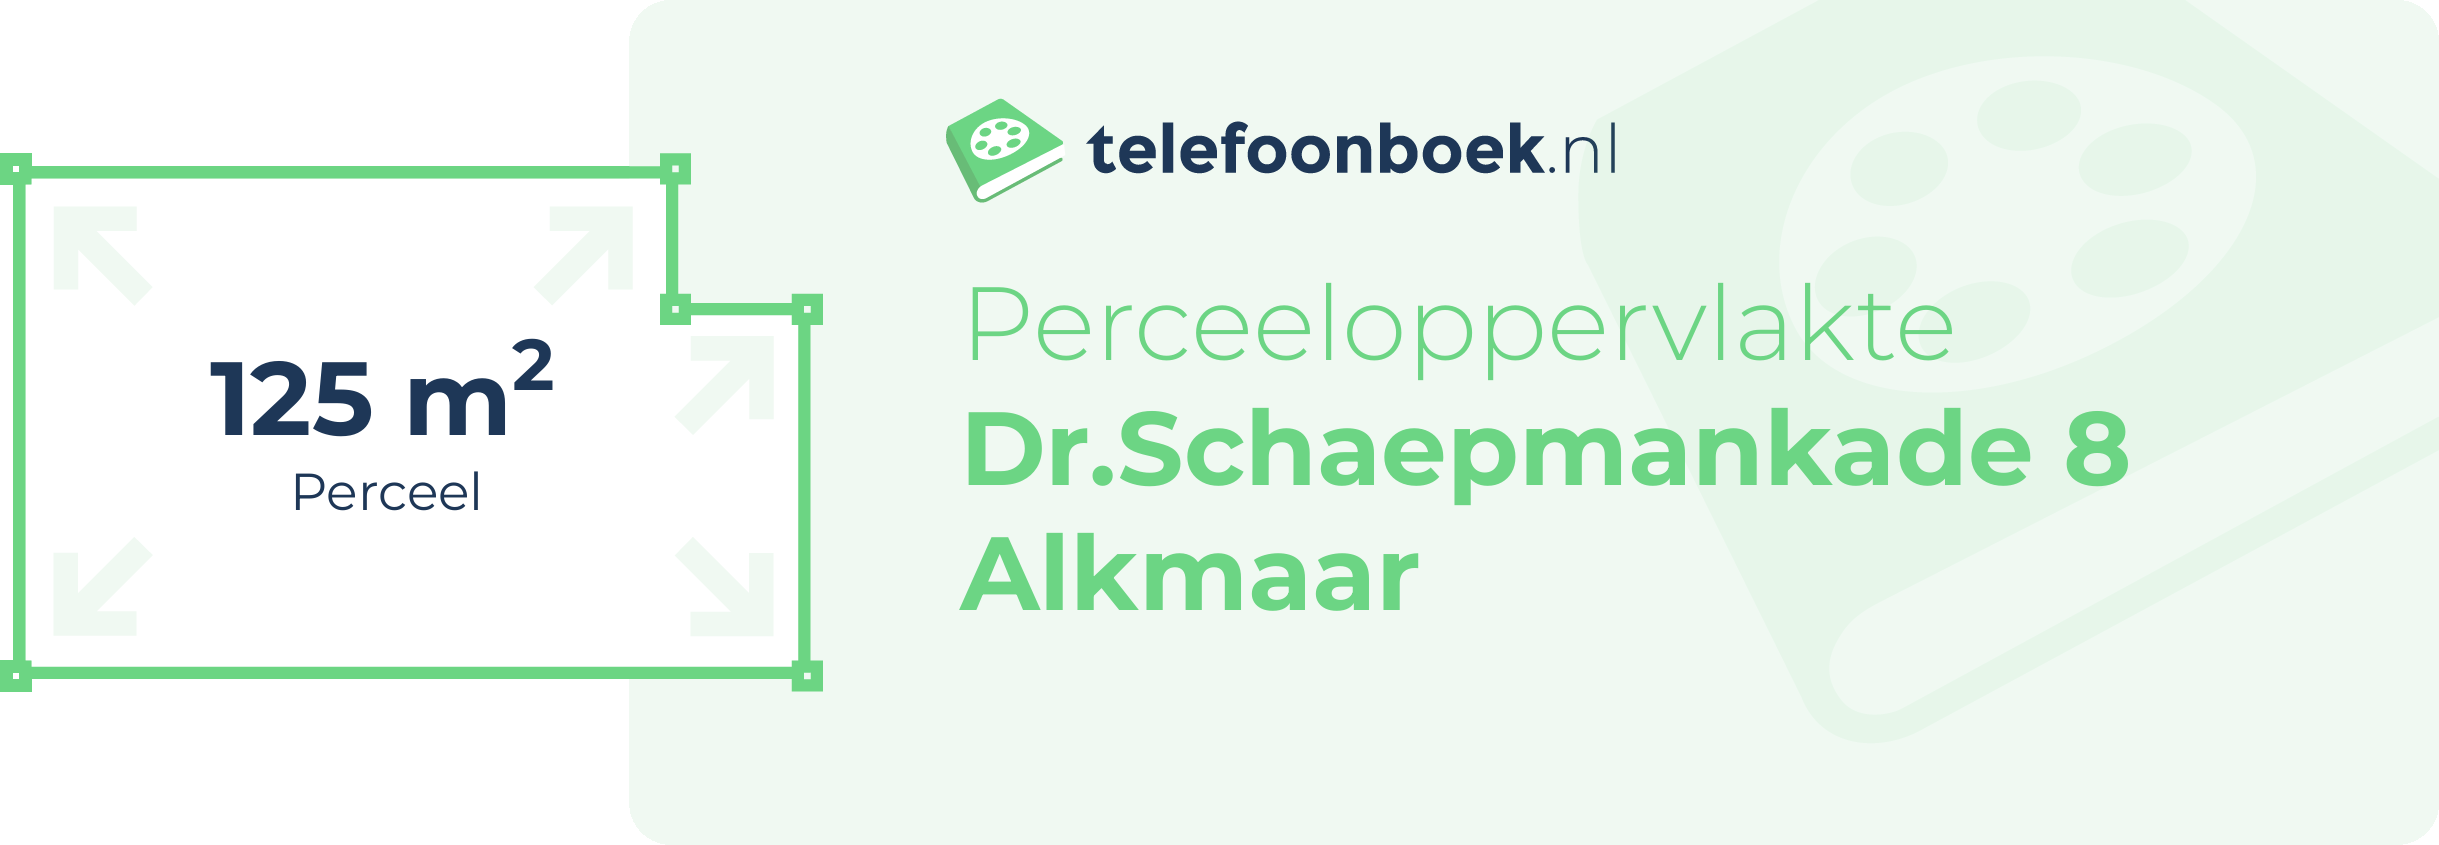 Perceeloppervlakte Dr.Schaepmankade 8 Alkmaar